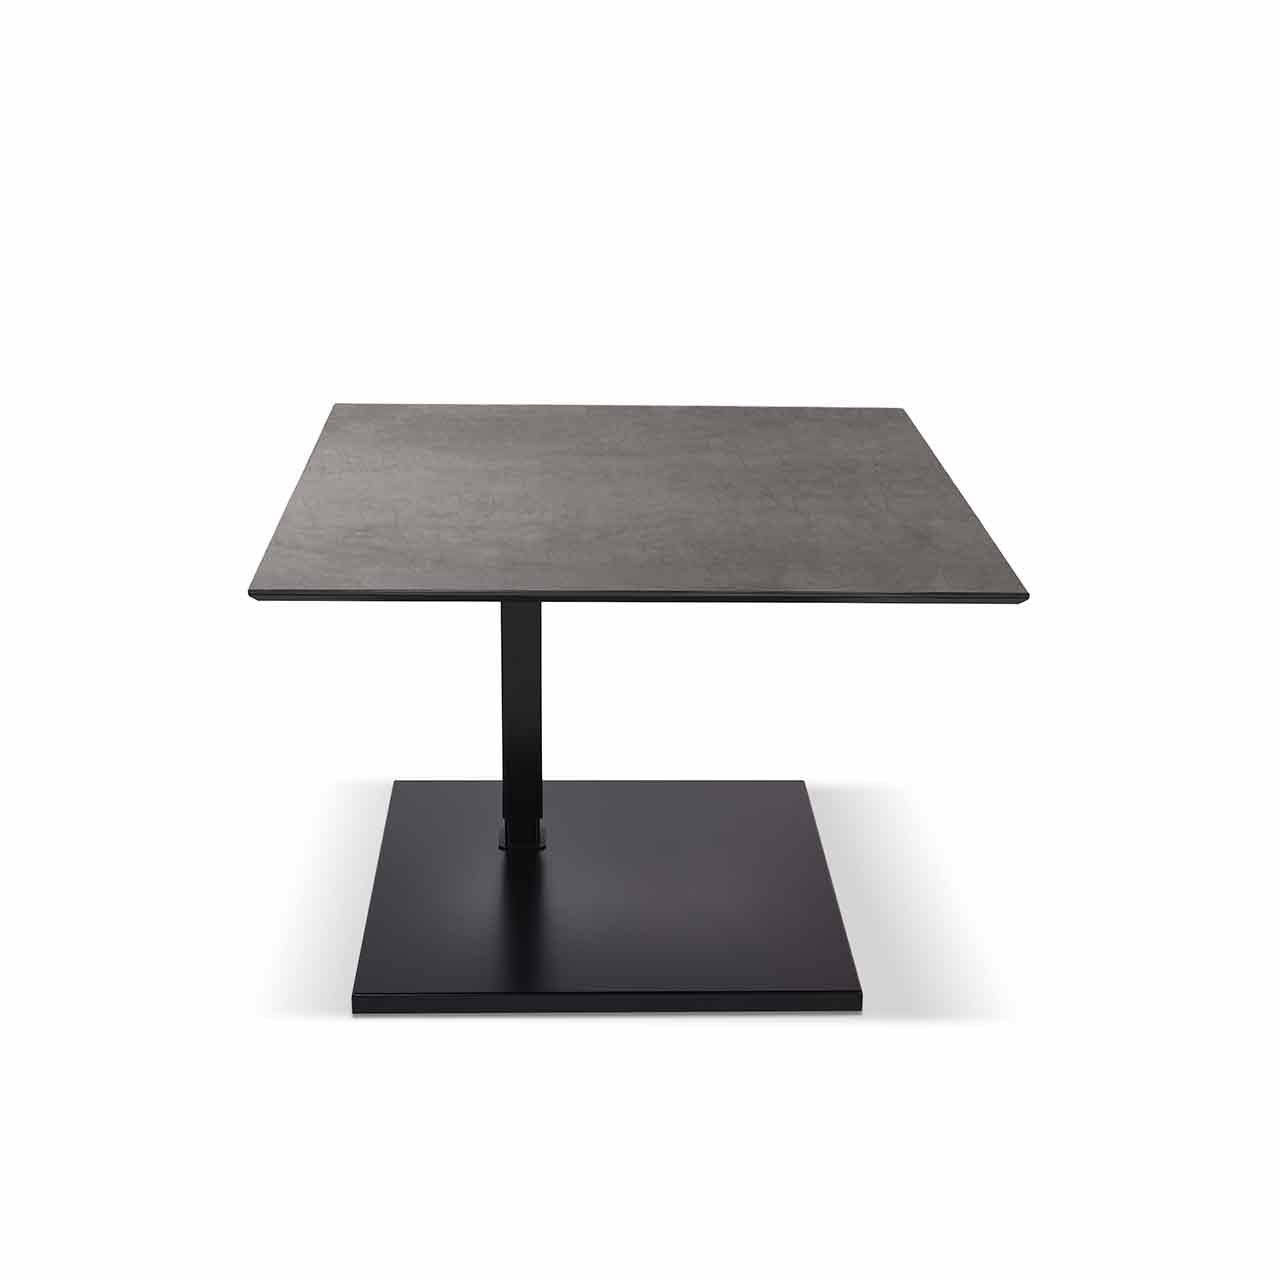 Ronald Schmitt – Beistelltisch Kolo K 726 - unten | Tischplatte Keramik Zement grau, Sockel schwarz 